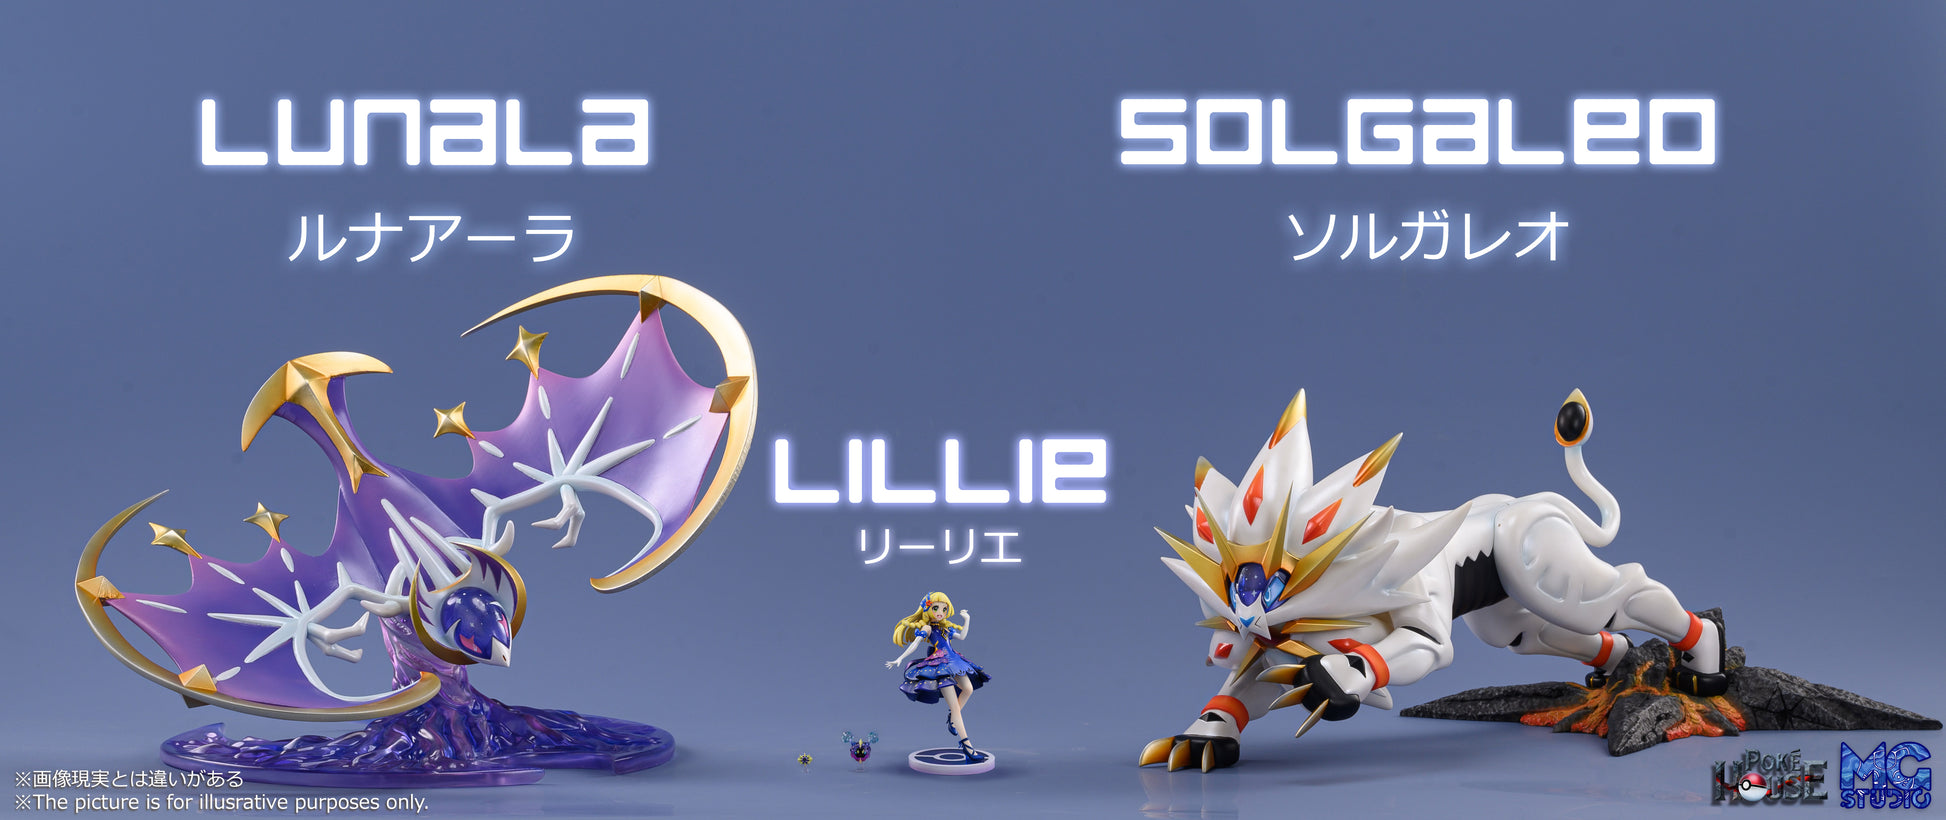 1/20 Scale World Zukan Solgaleo & Lunala - Pokemon Resin Statue - XO Studio  [Pre-Order]